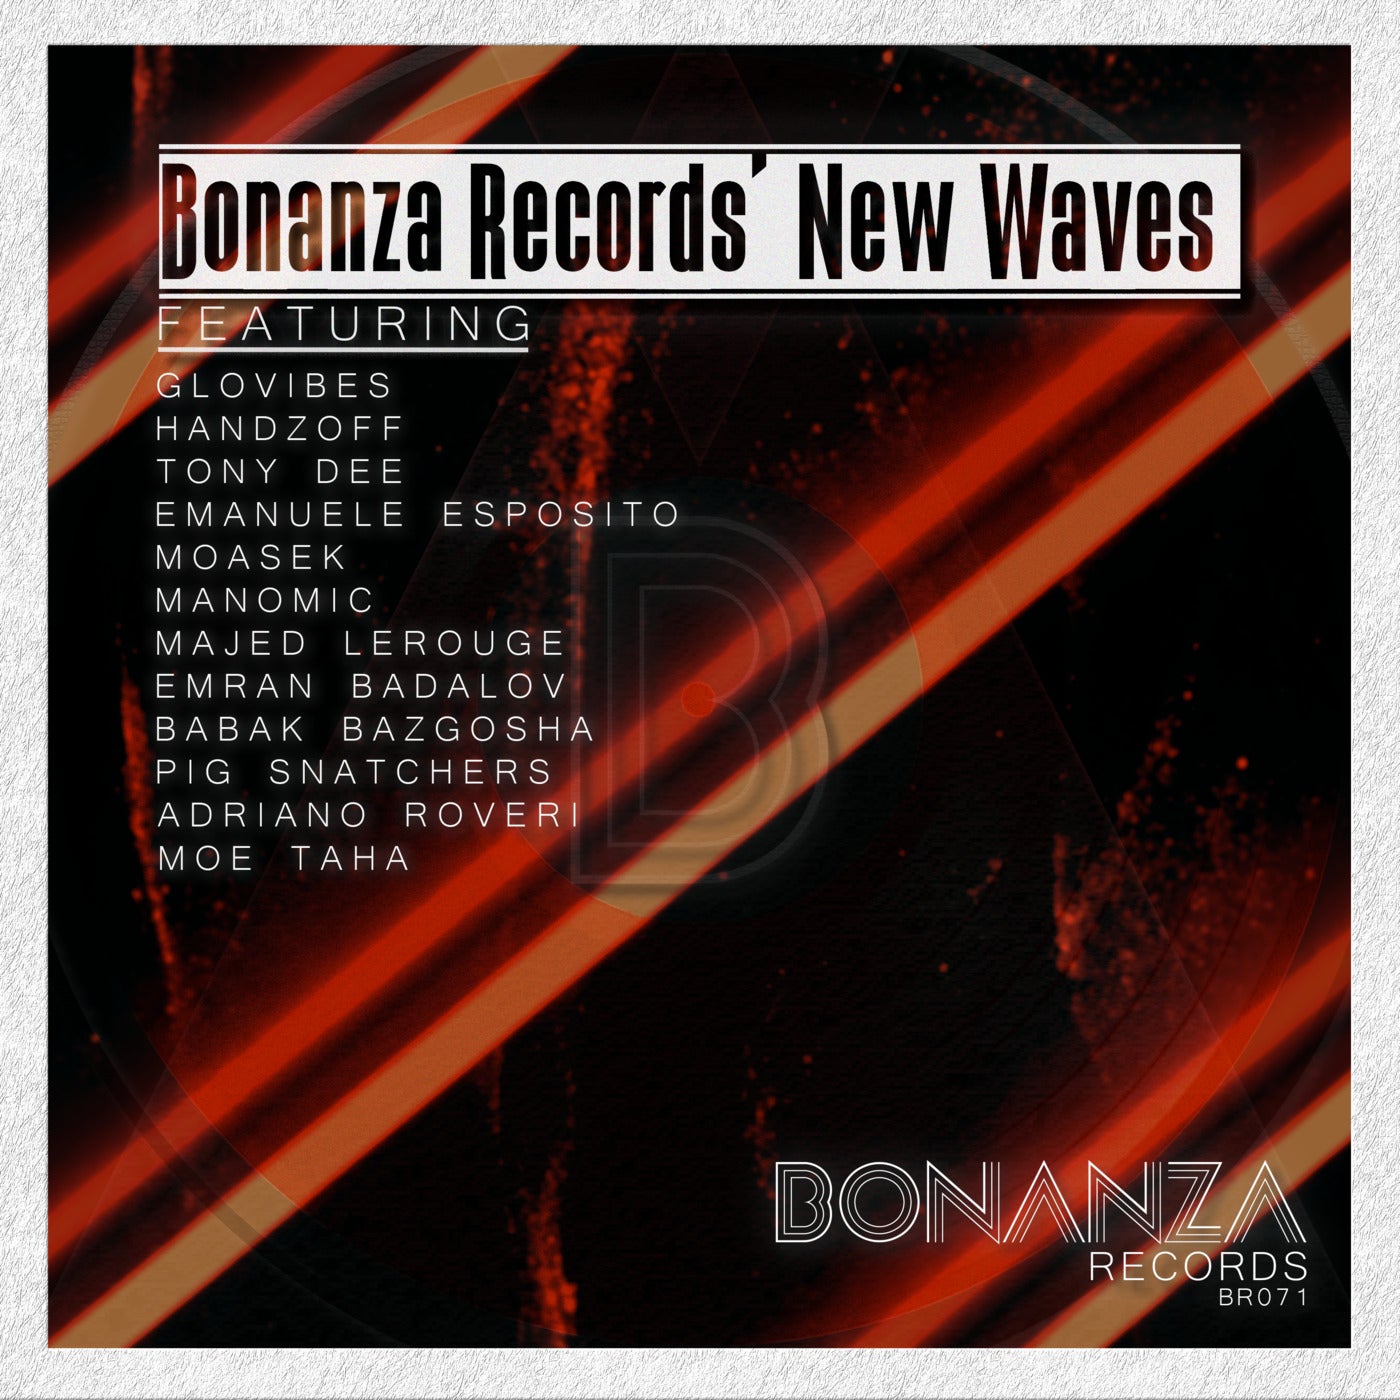 Bonanza Records New Wave